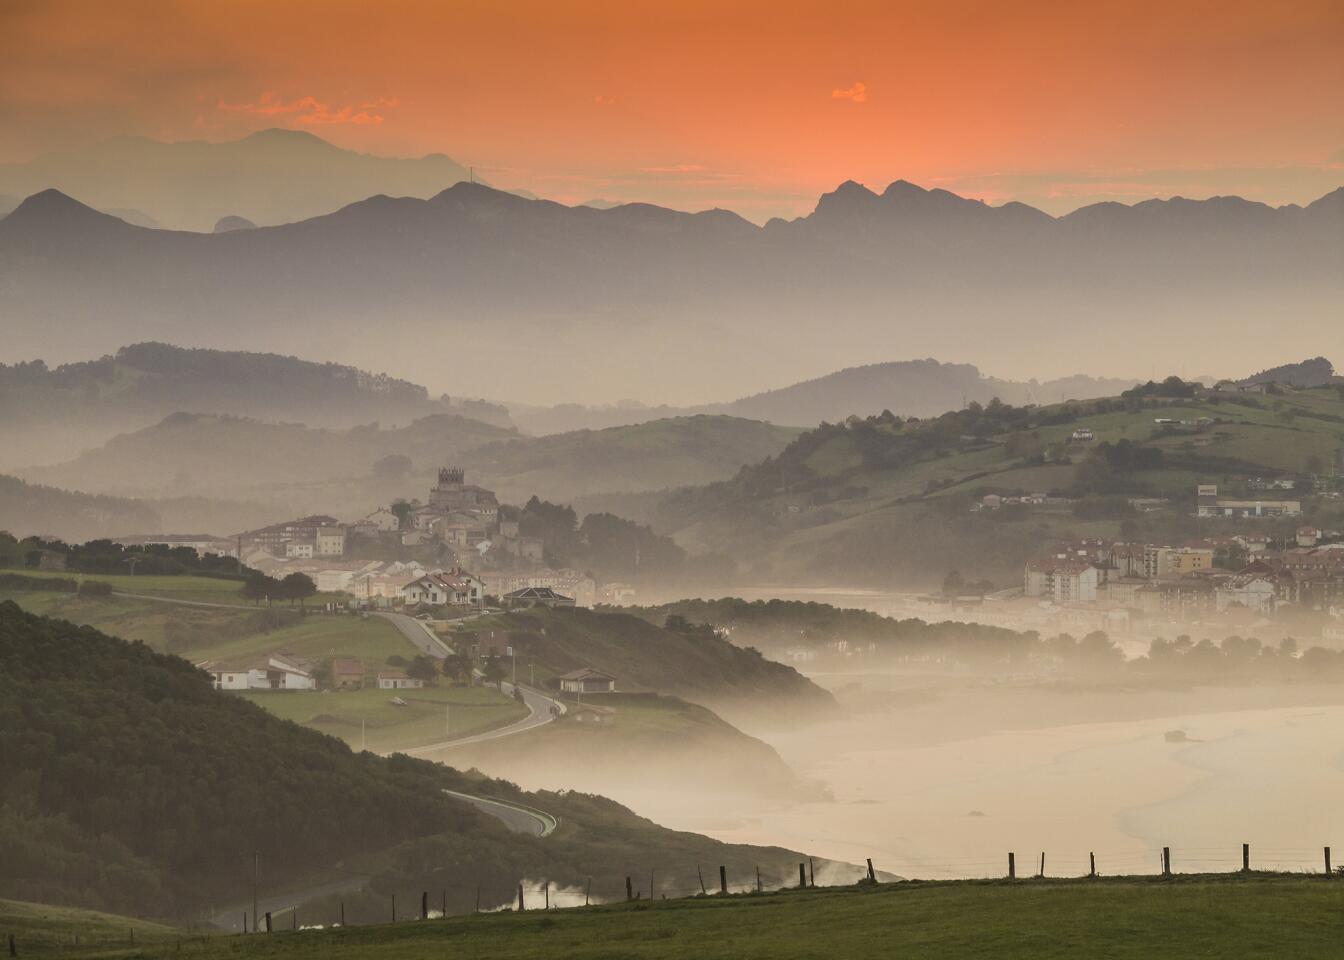 Cantabria, Spain